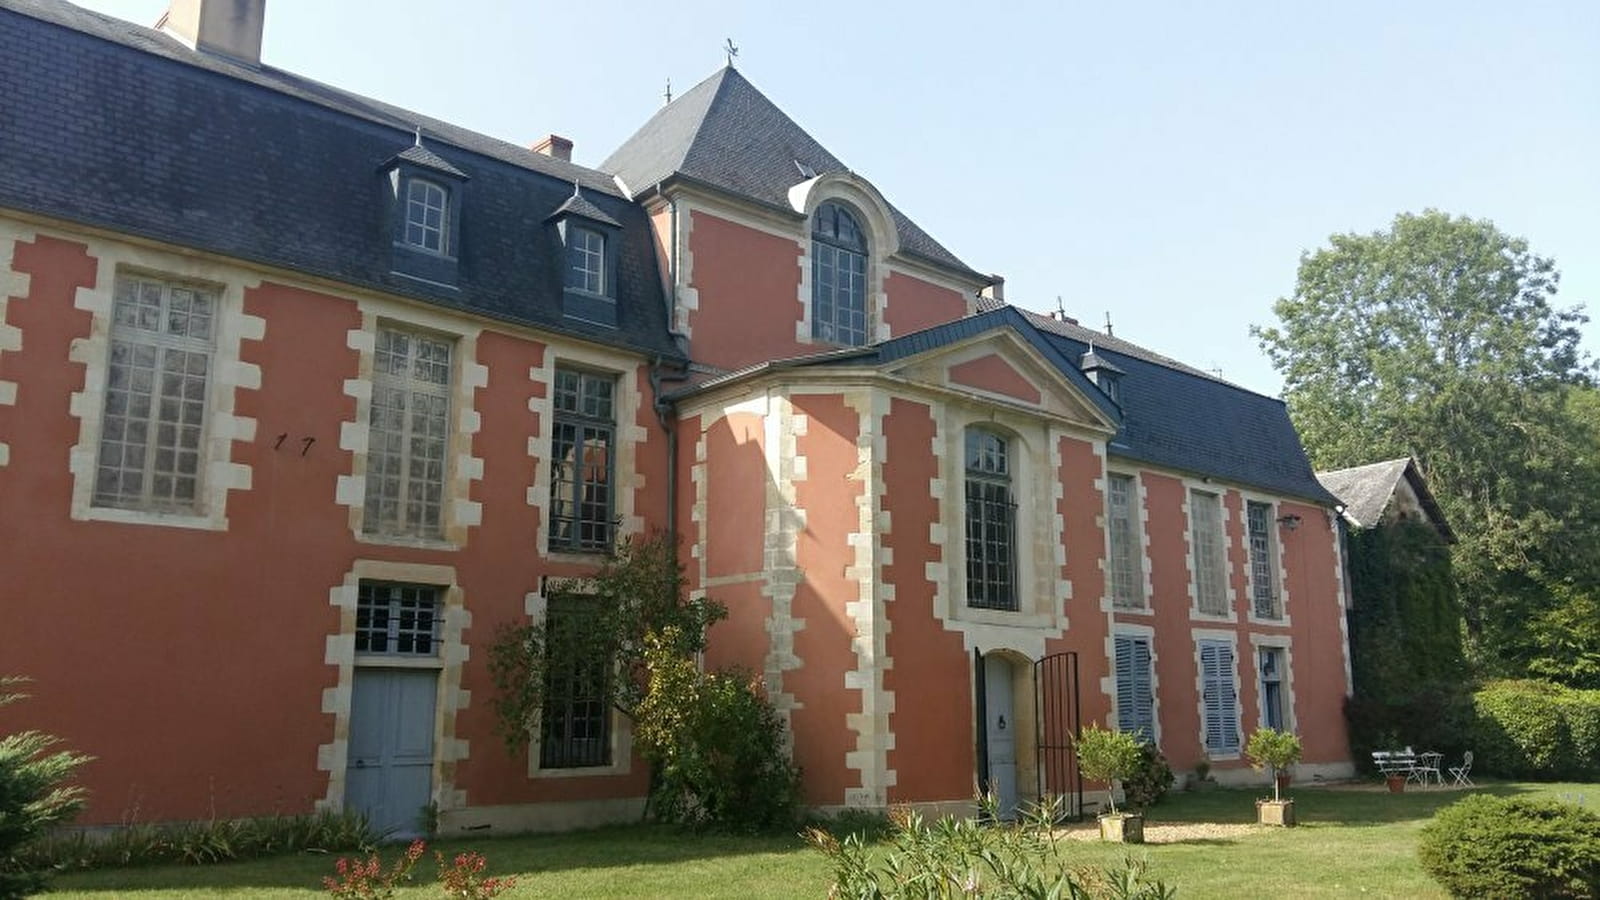 Chambres d'hôtes du Château de Montchevreau